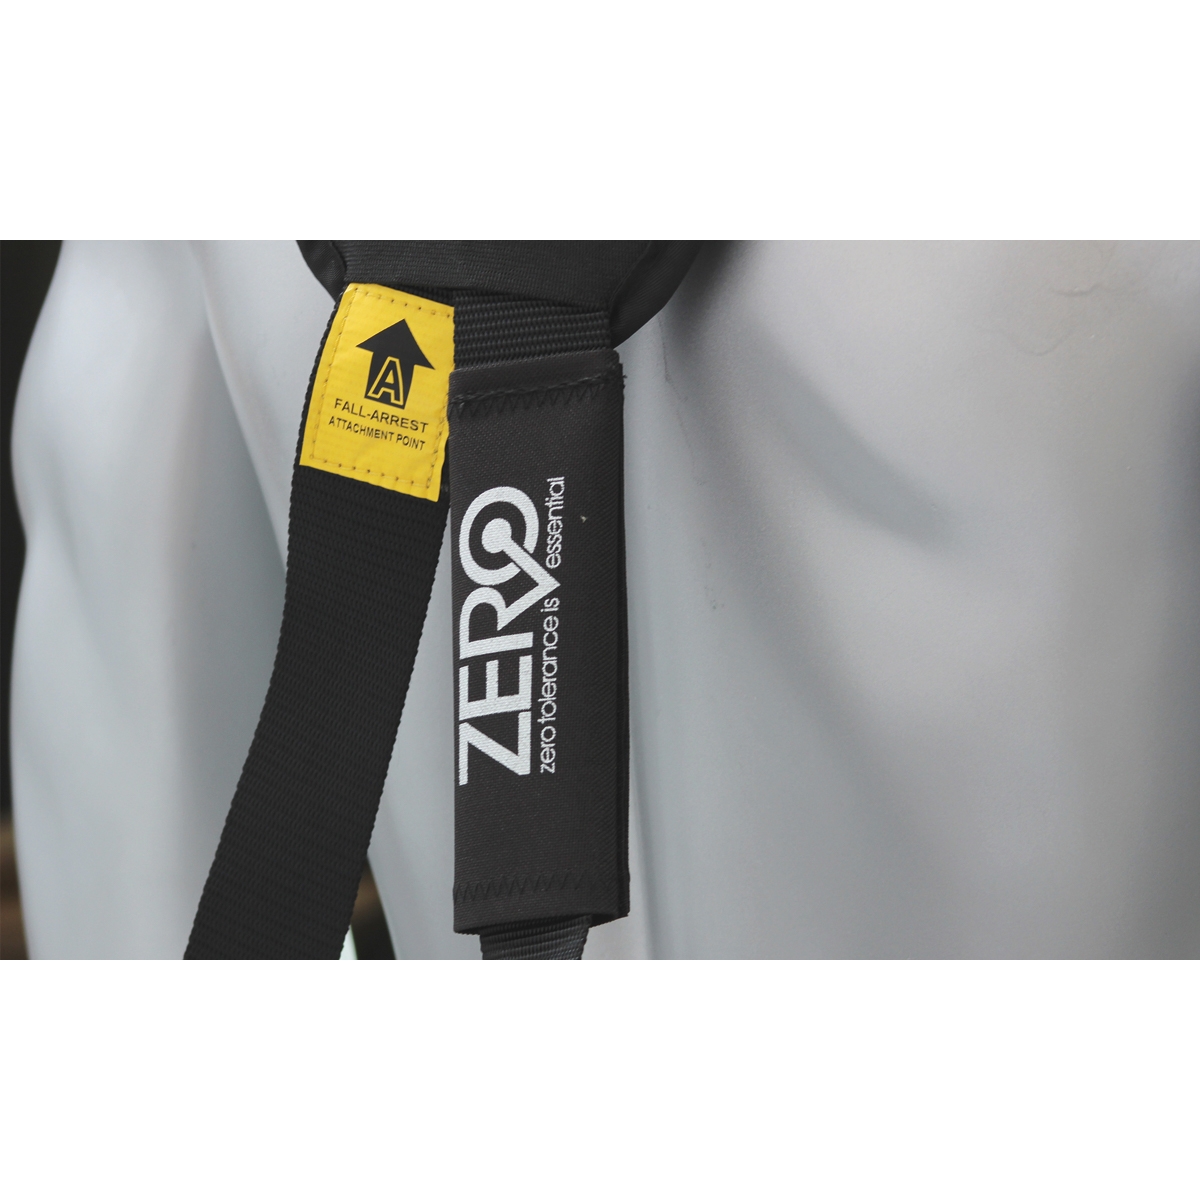 ZERO Elite Construction Harness Z+81 HEP4678